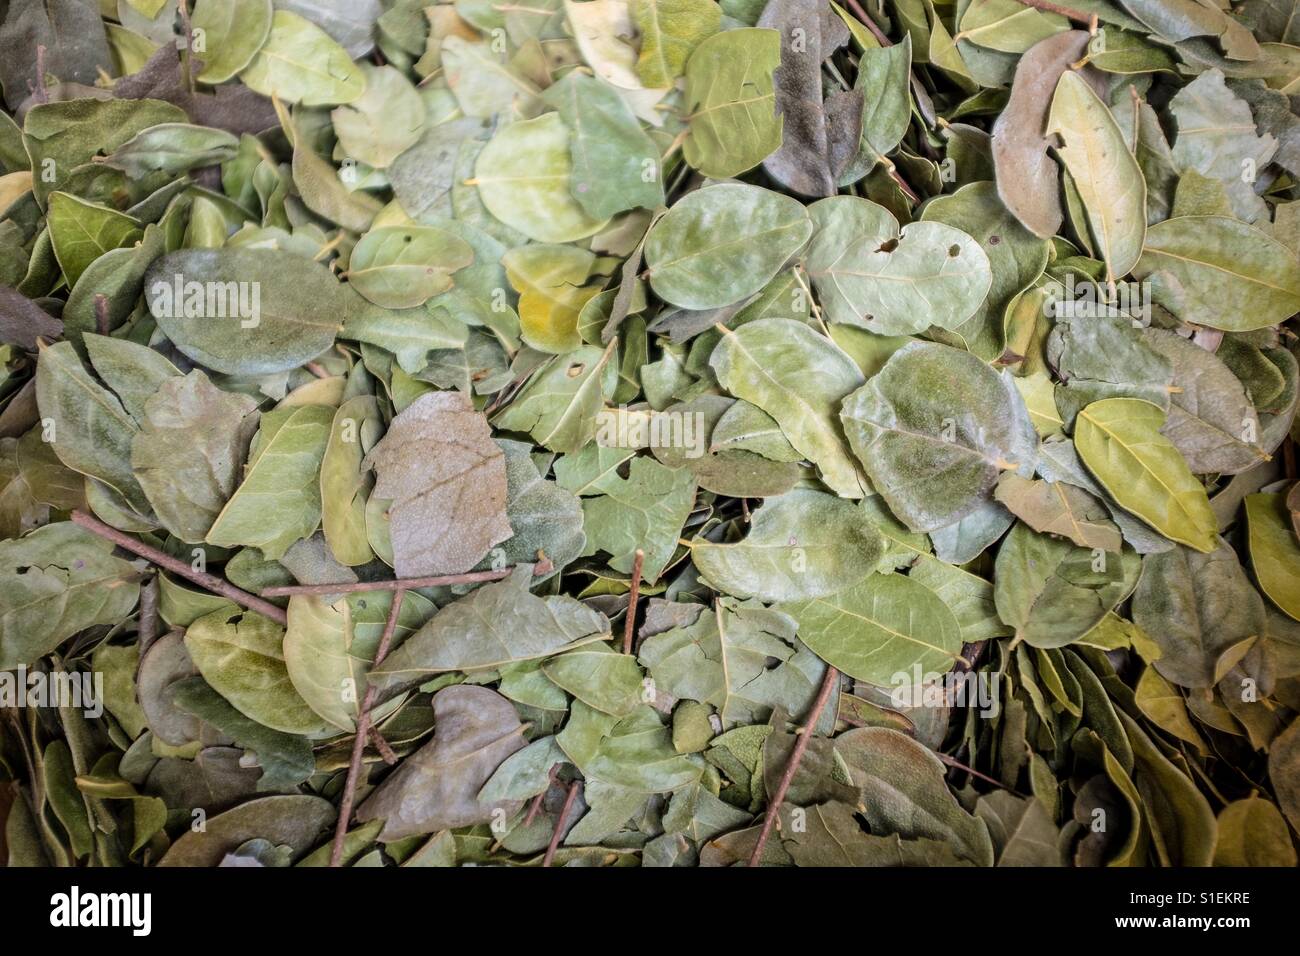 Coca leaves Stock Photo